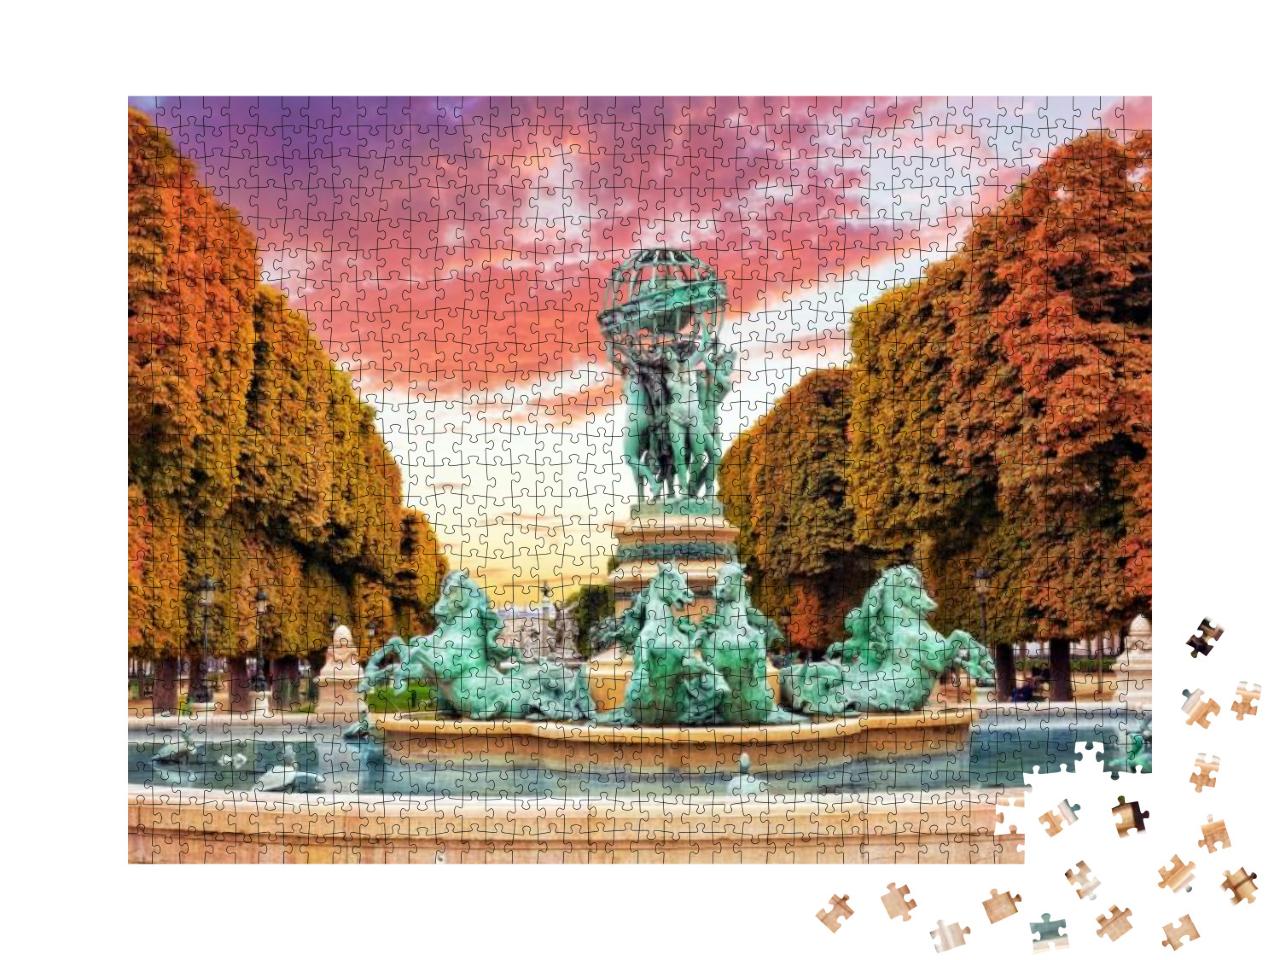 Luxembourg Garden in Paris, Fontaine De Observatoir. Pari... Jigsaw Puzzle with 1000 pieces